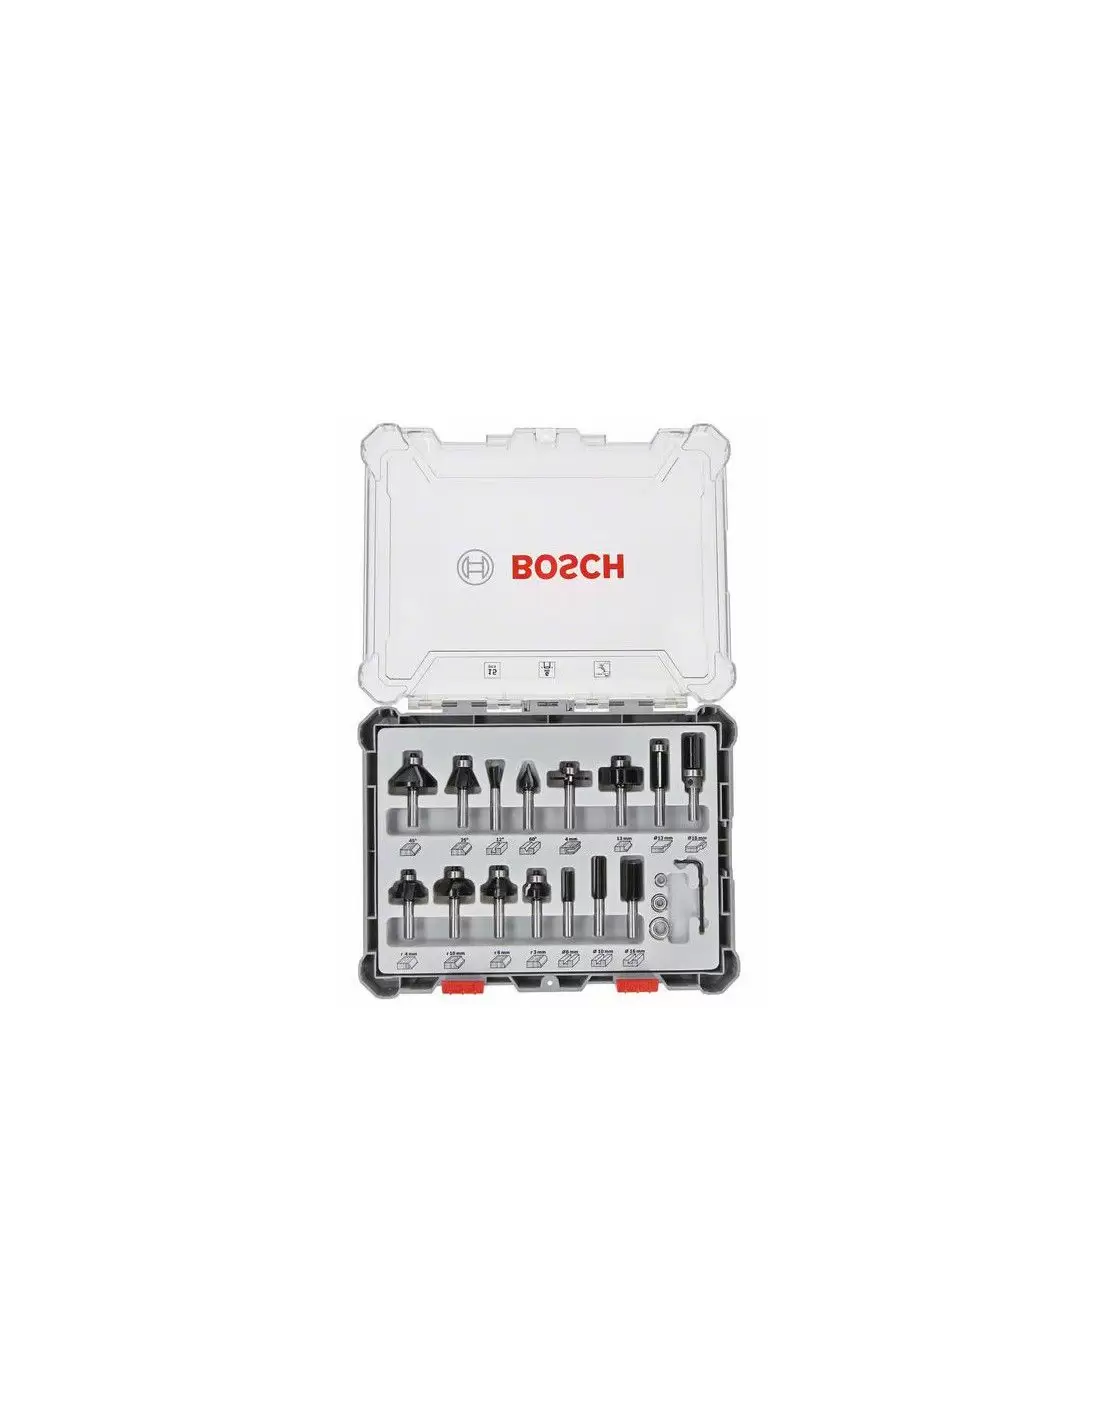 Fraise mixte Bosch queue de 8 mm en coffret complet de 30 outils